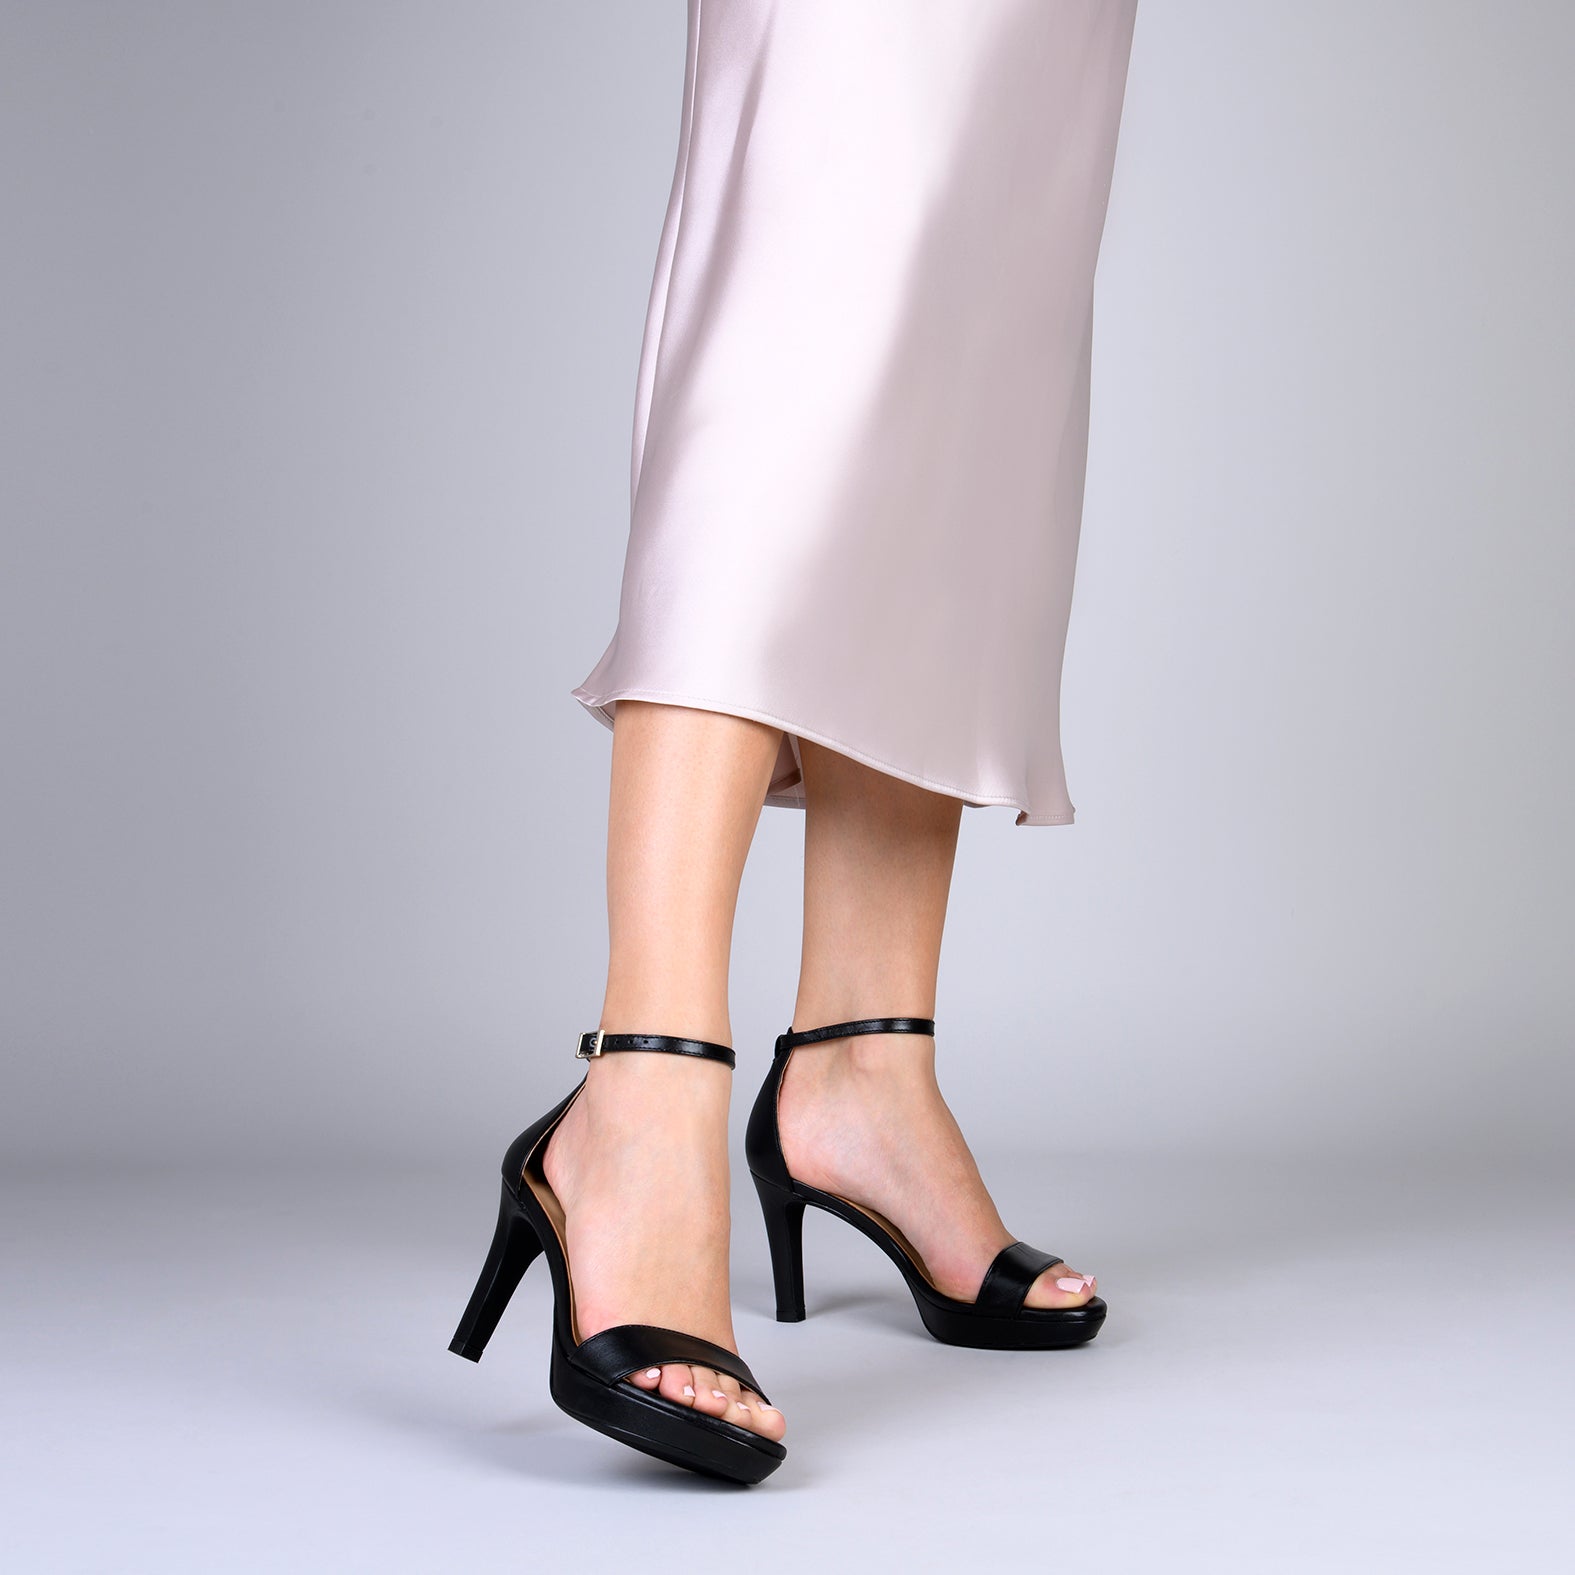 PARTY – BLACK  high-heeled platform sandals